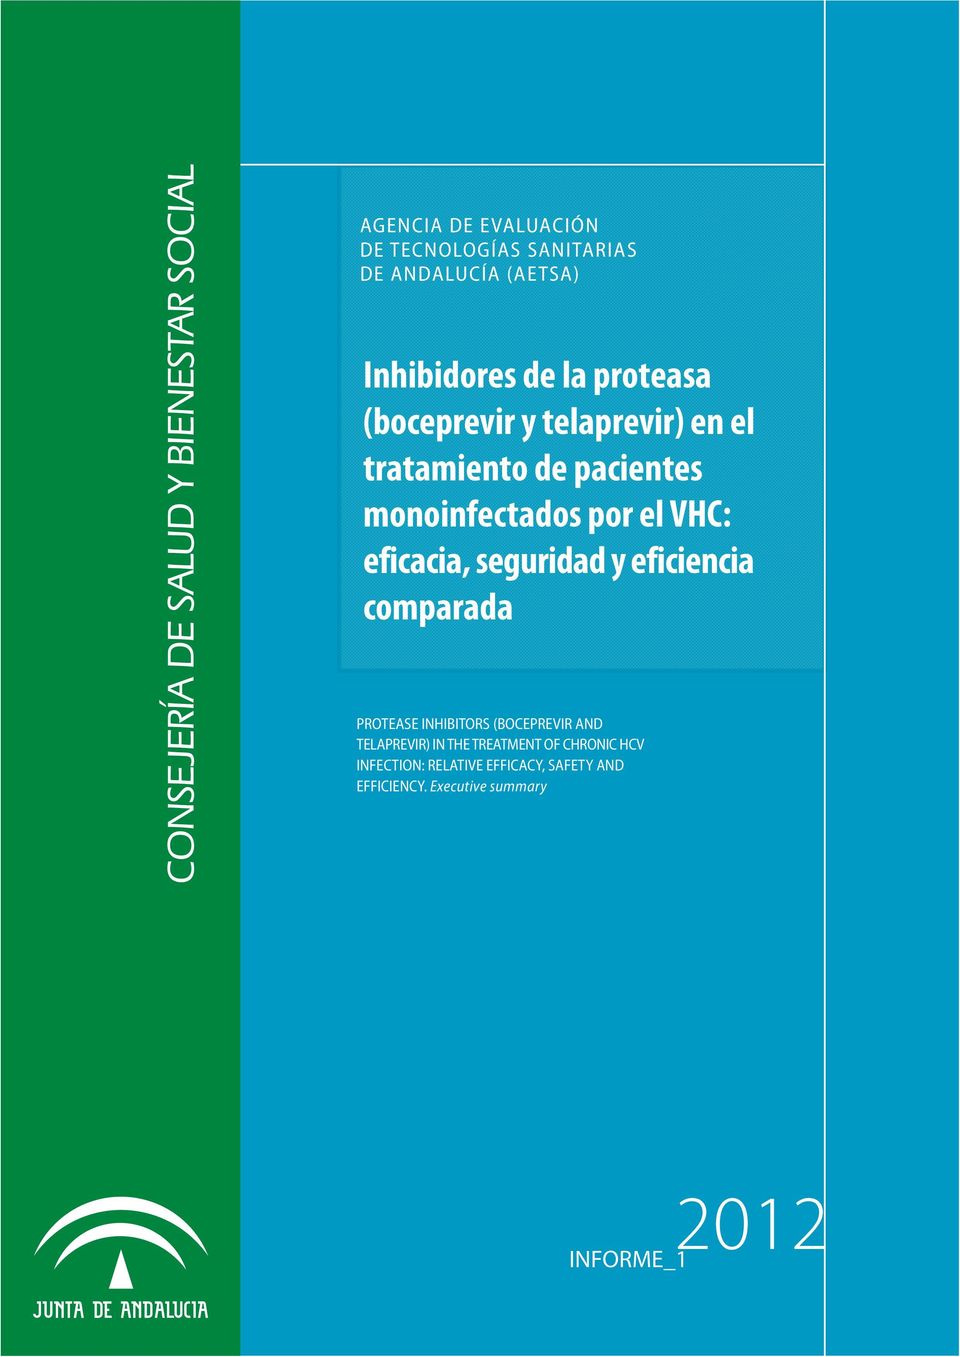 por el VHC: eficacia, seguridad y eficiencia comparada PROTEASE INHIBITORS (BOCEPREVIR AND TELAPREVIR) IN